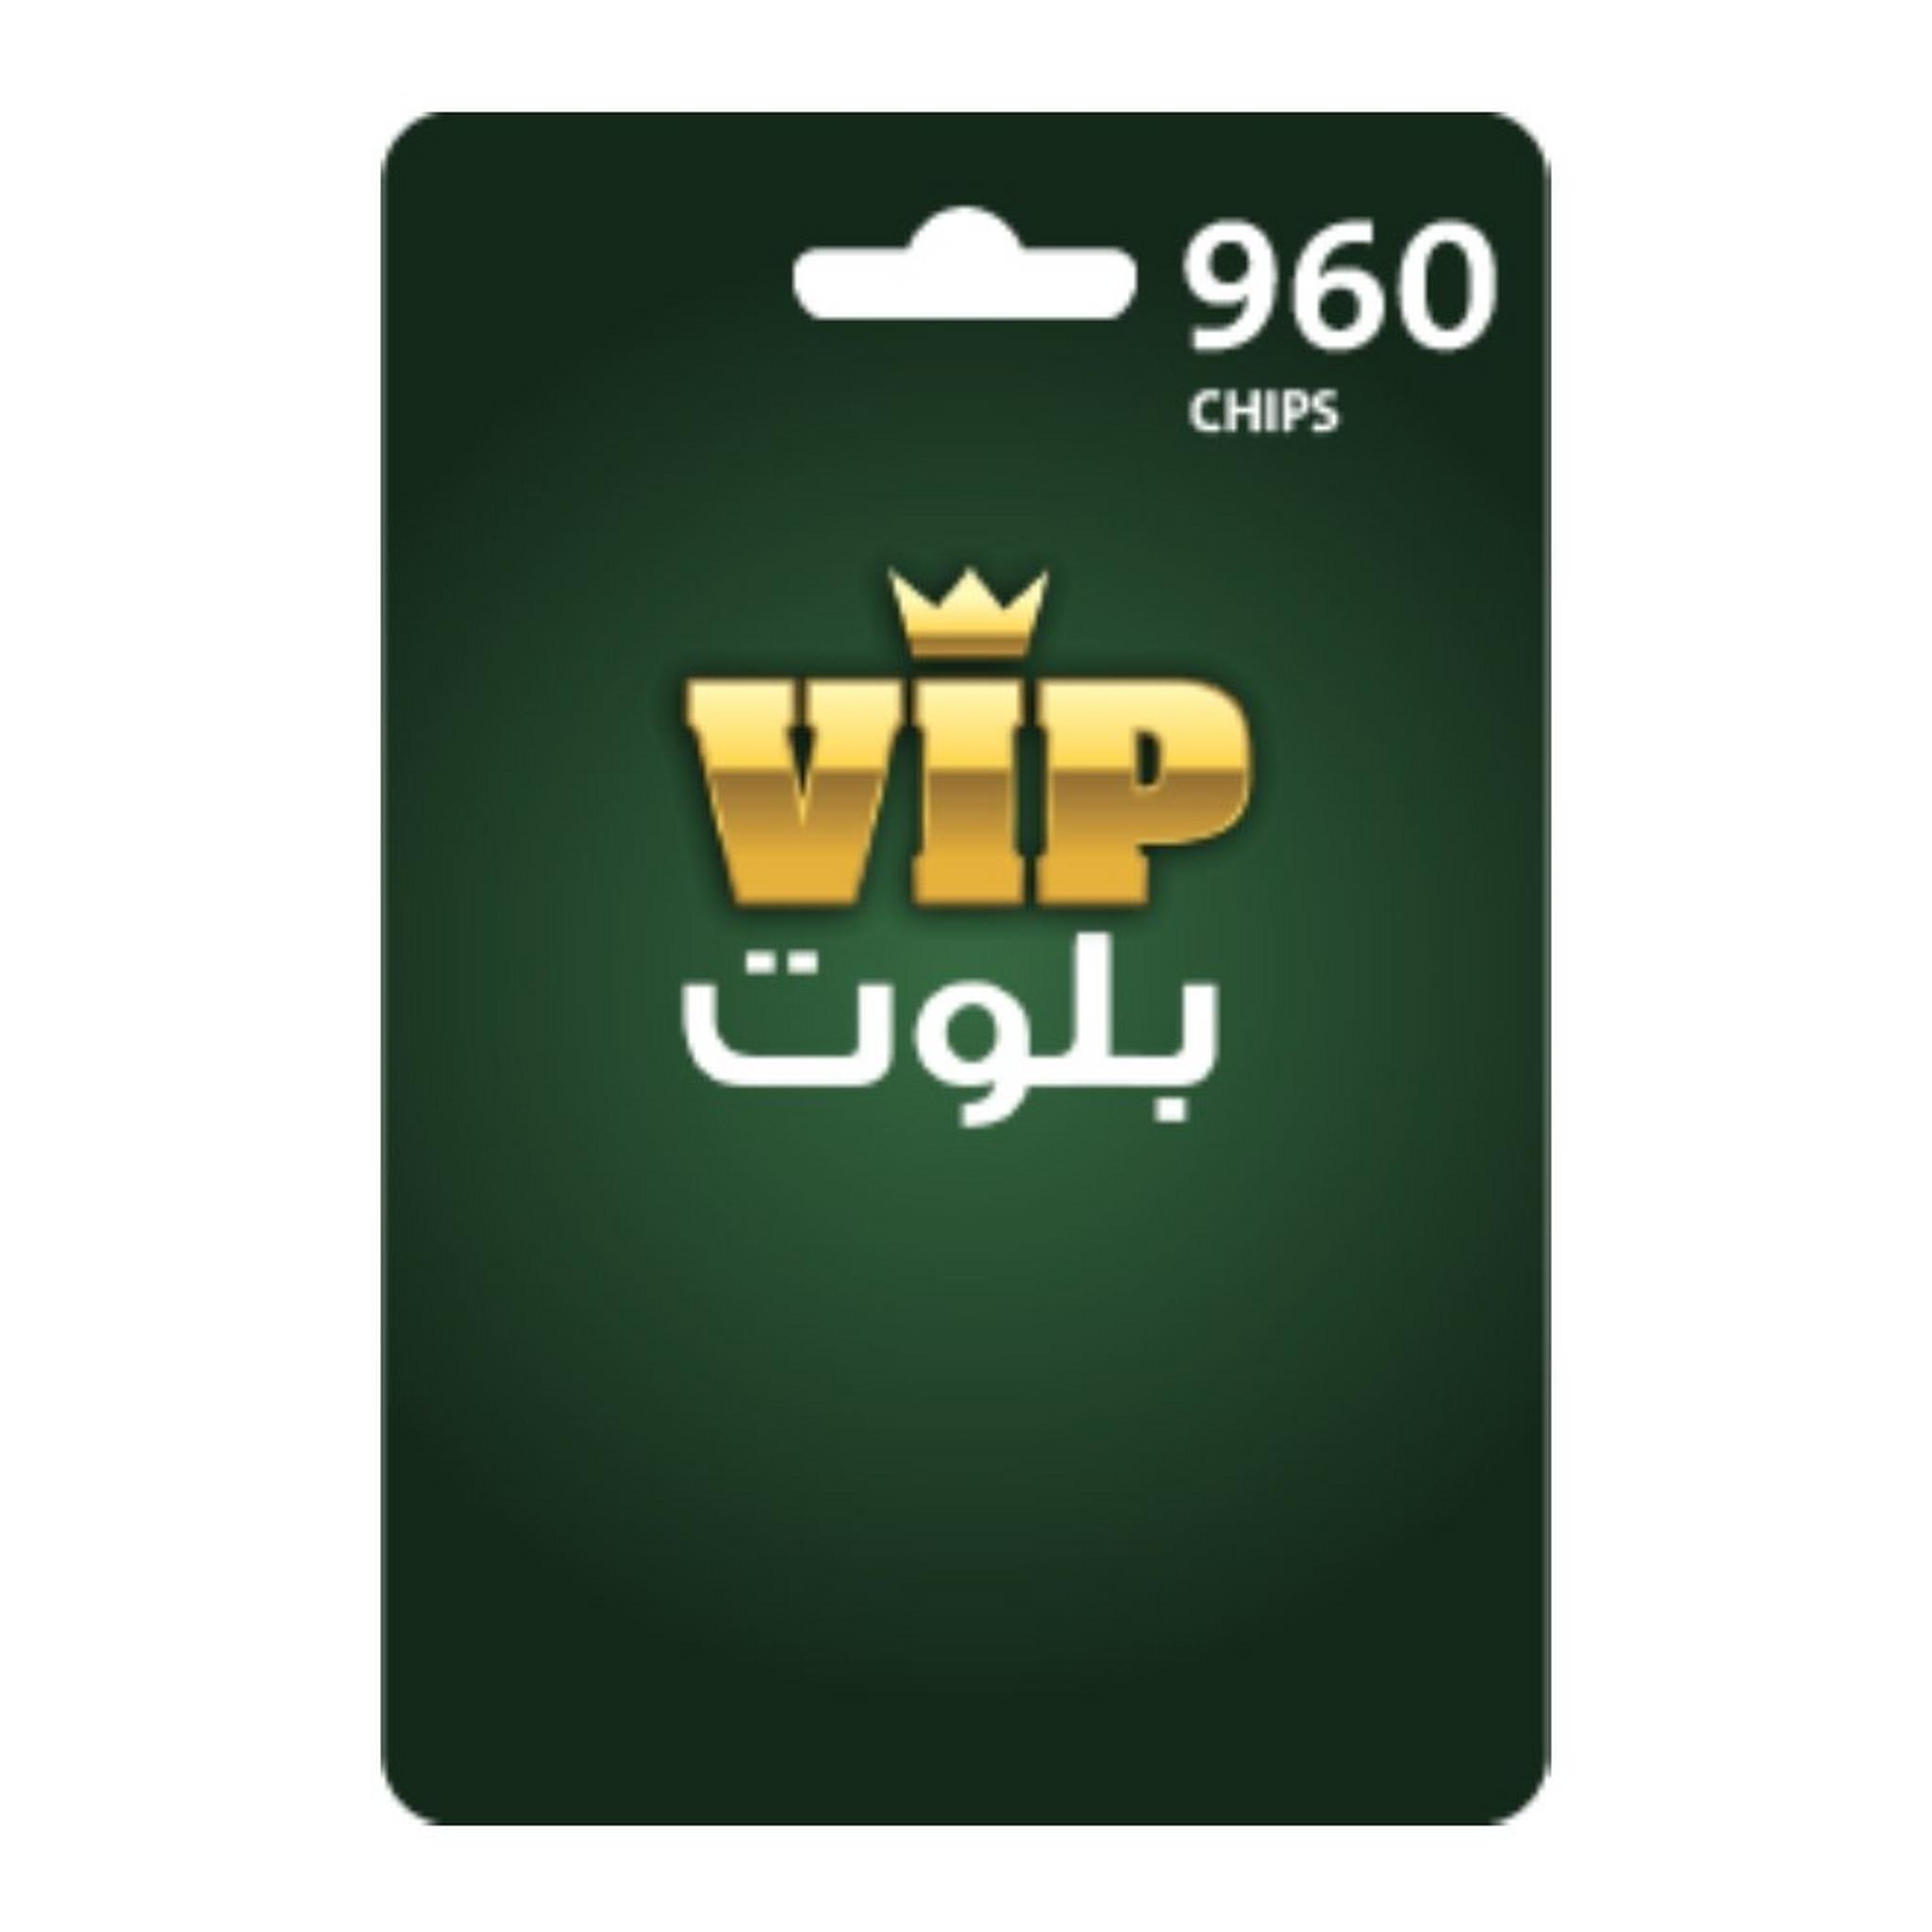 VIP Baloot Card 960 Chips